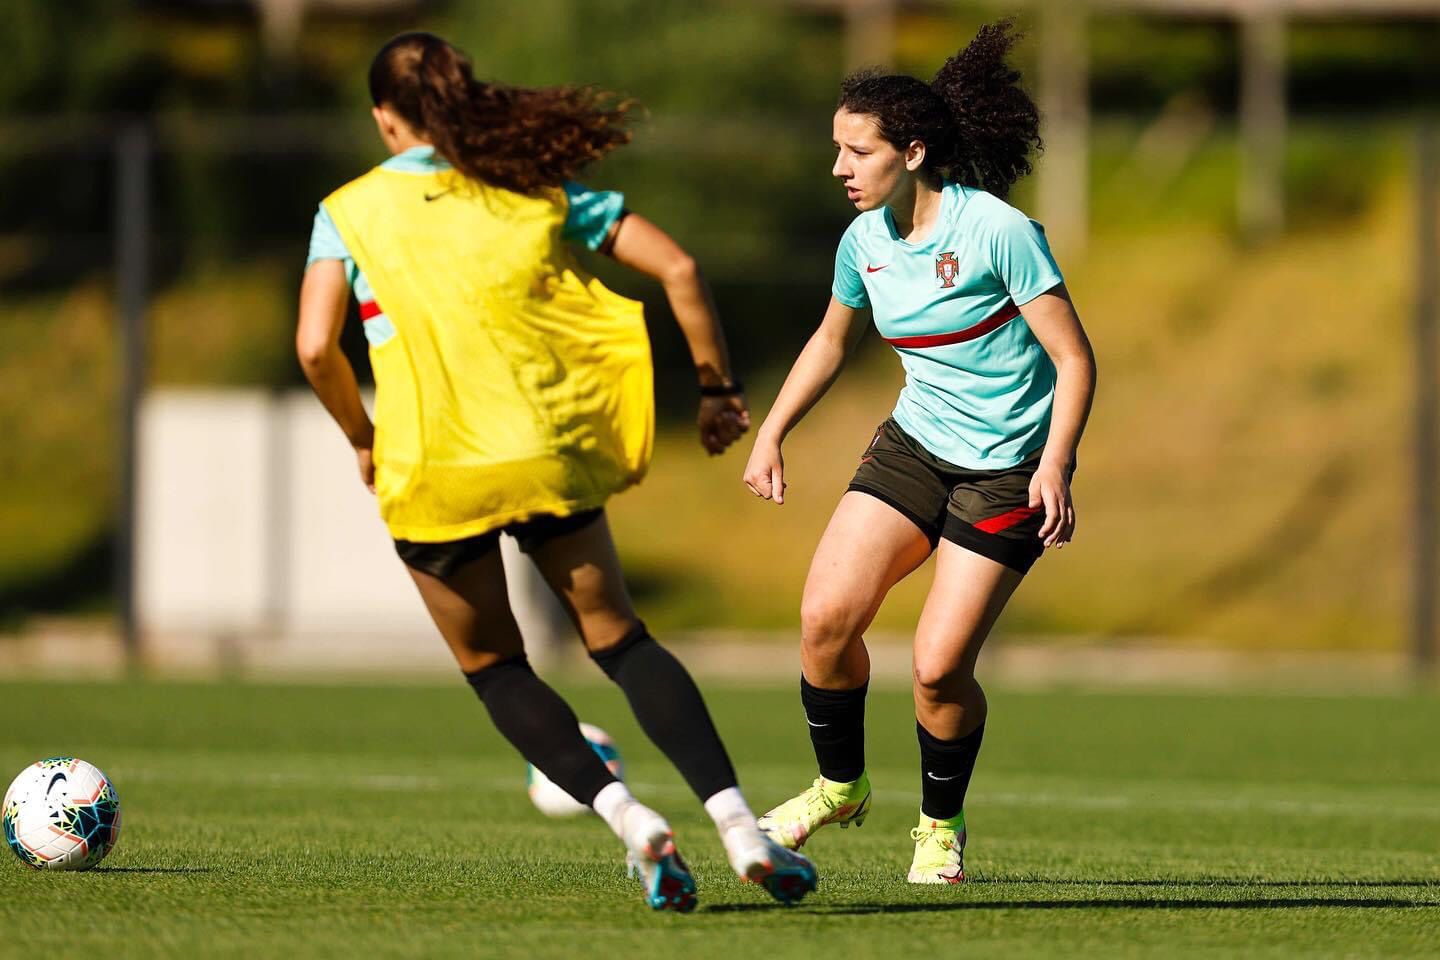 Sara Cordeiro chamada pela 3º vez aos trabalhos da Seleção Nacional Feminina Sub-18